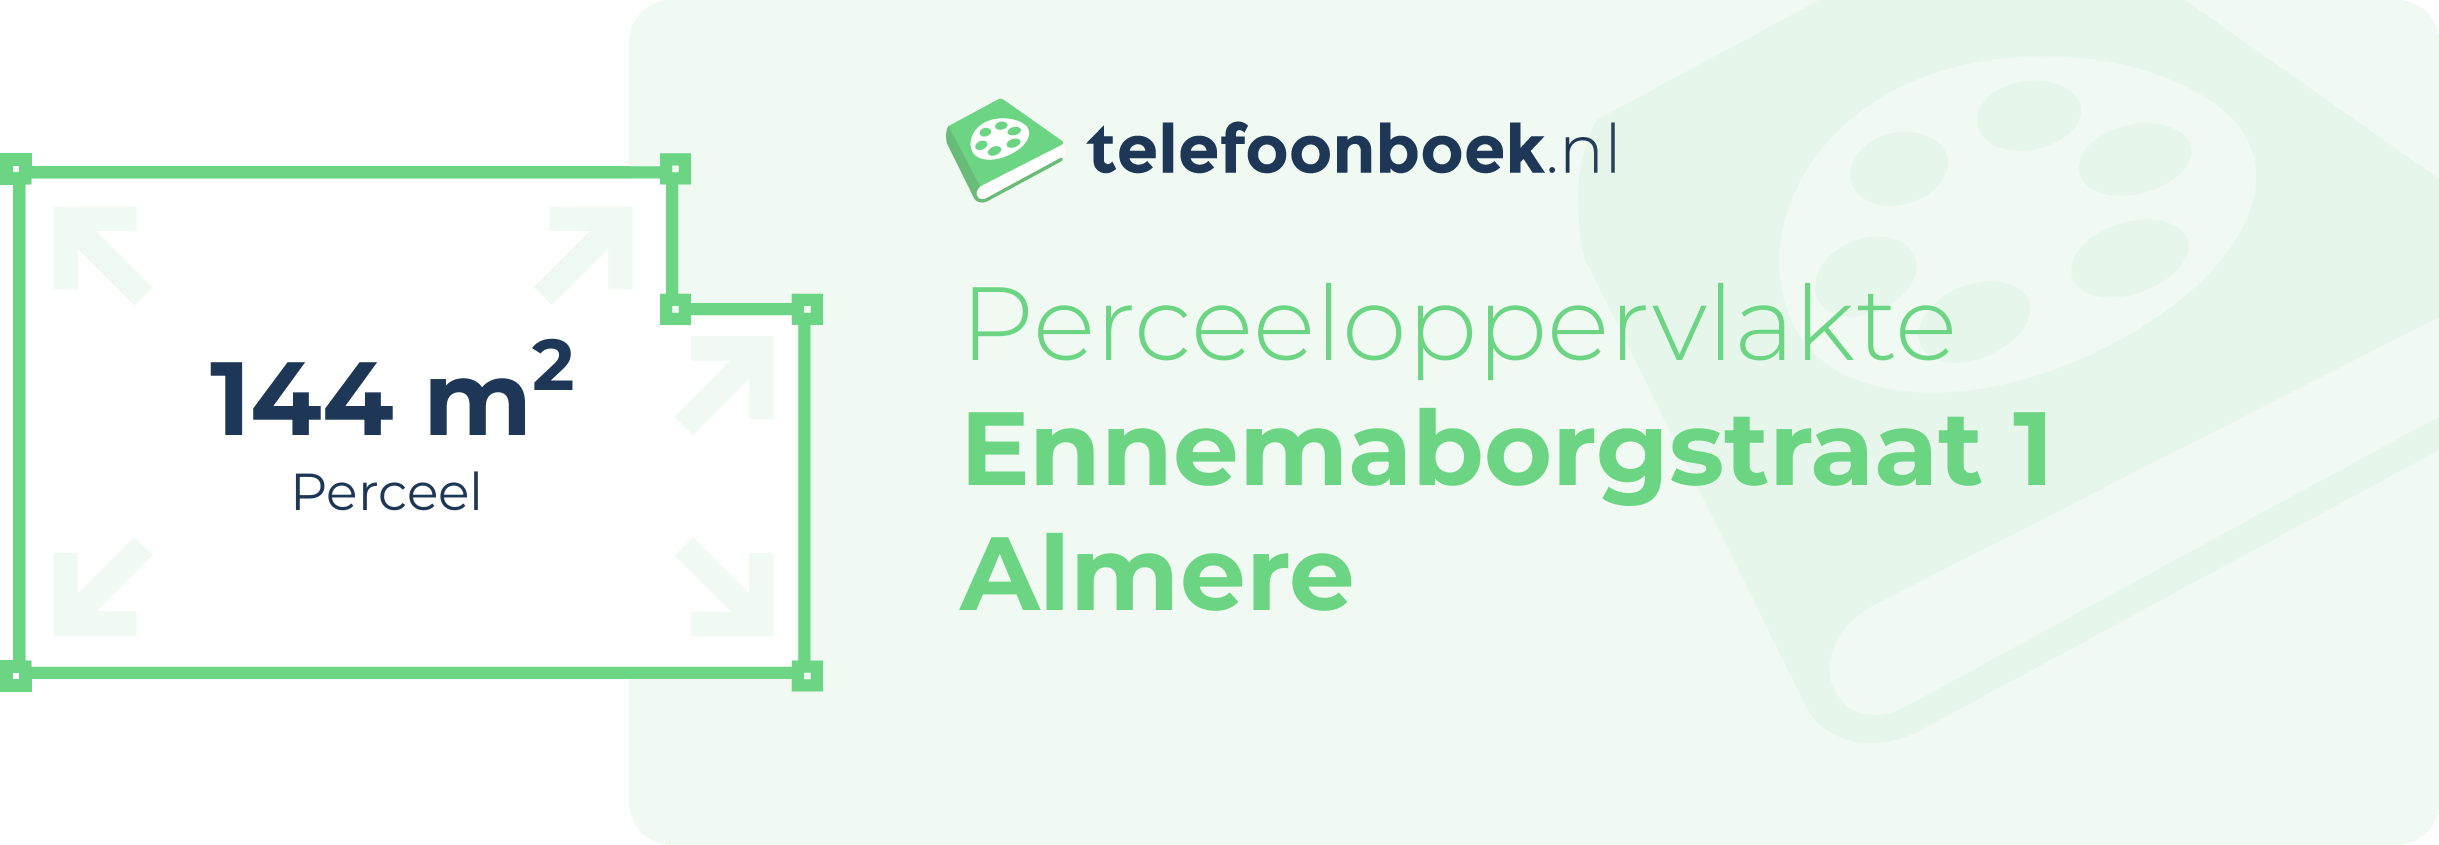 Perceeloppervlakte Ennemaborgstraat 1 Almere